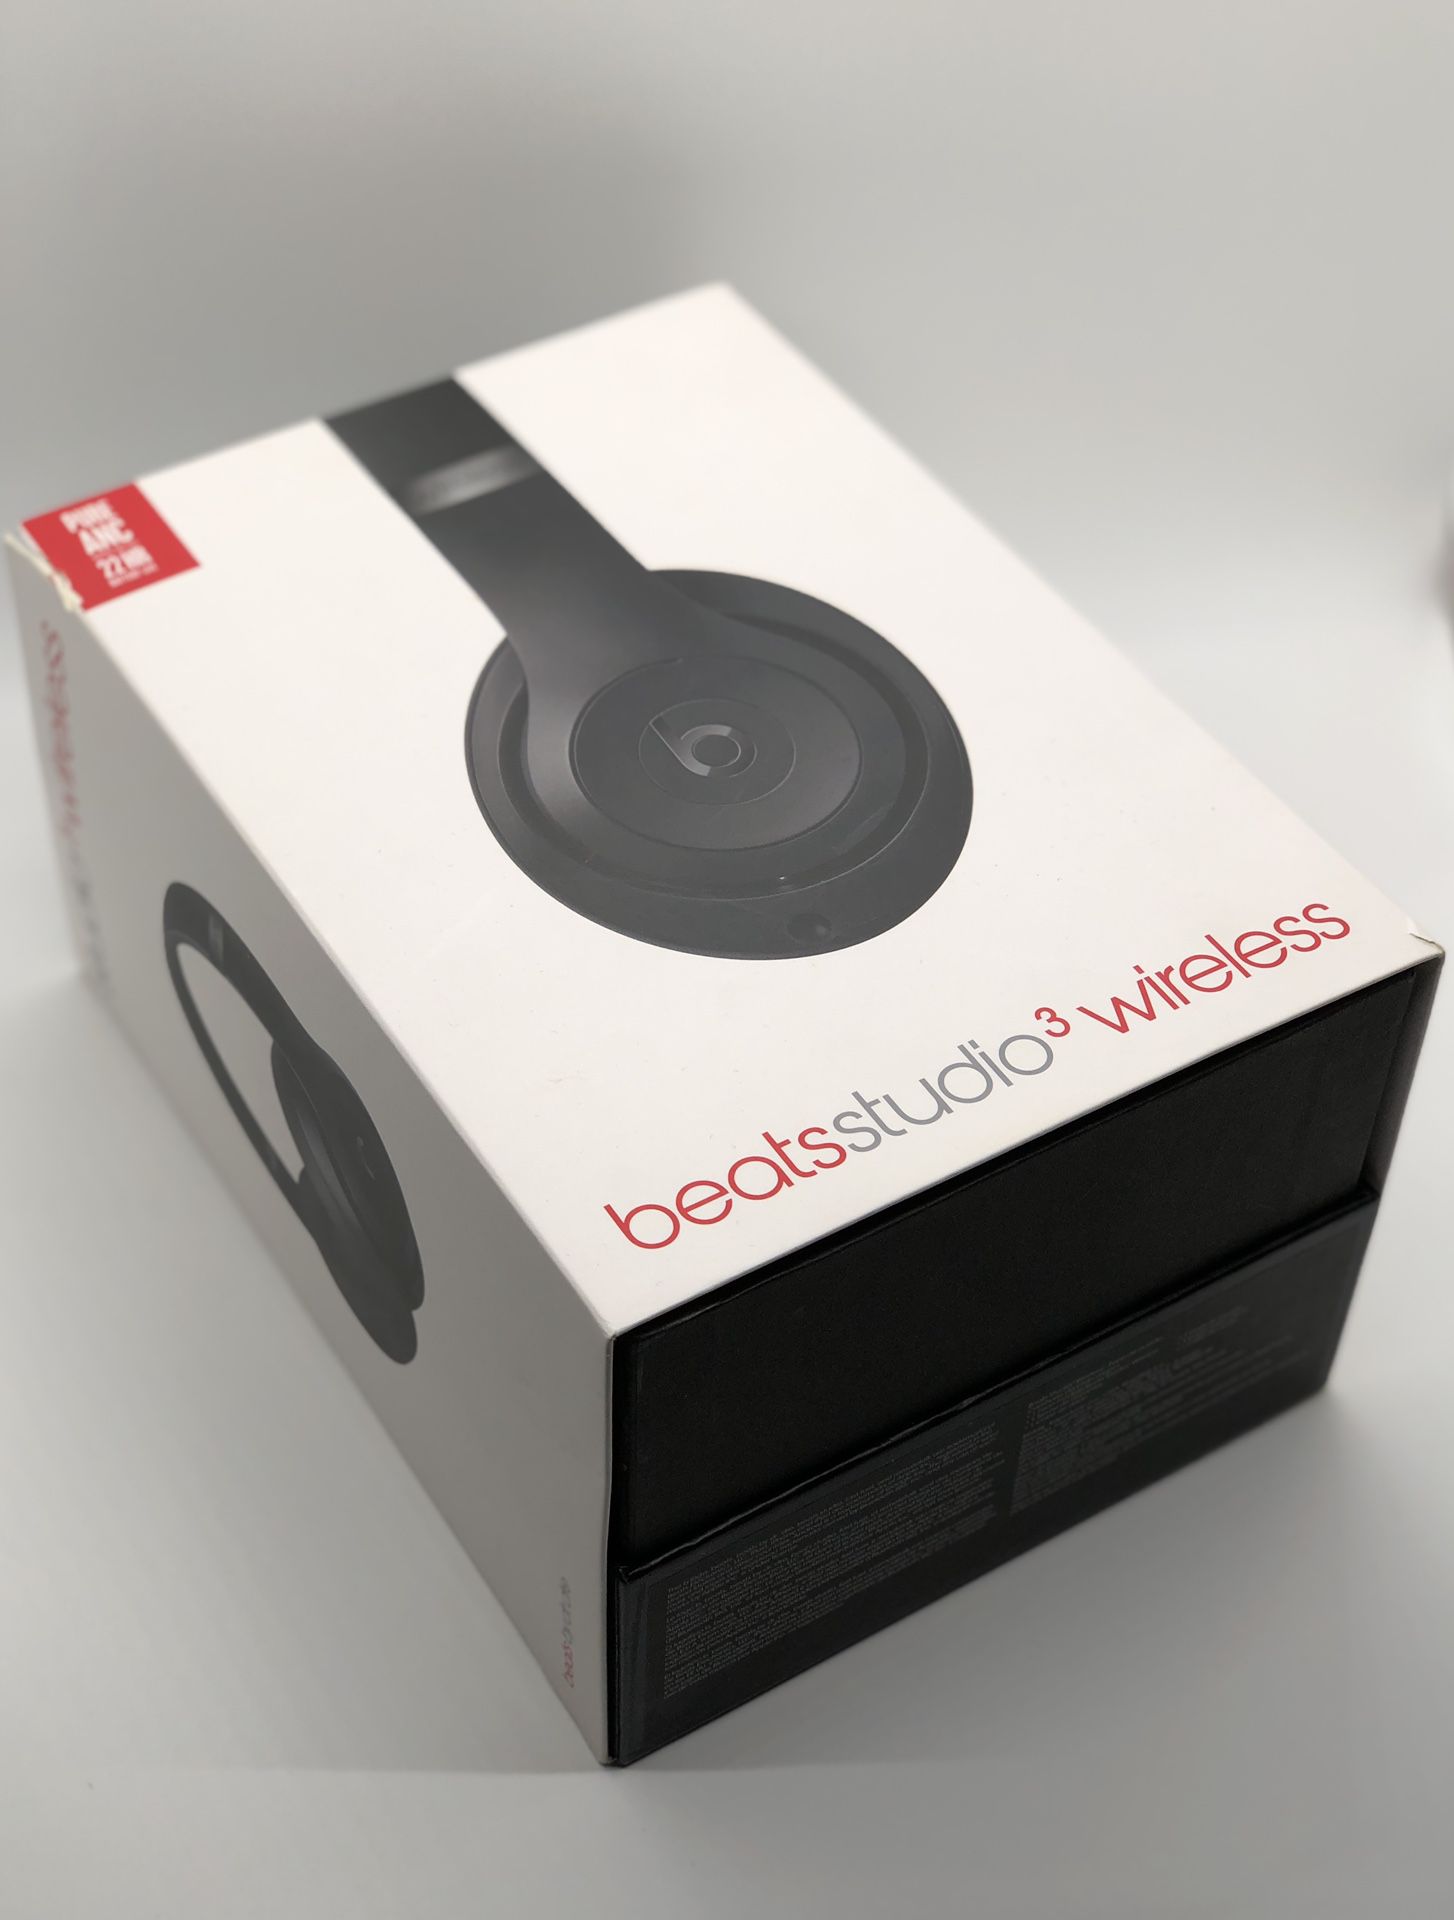 Beats Studio 3 wireless headphones (black)